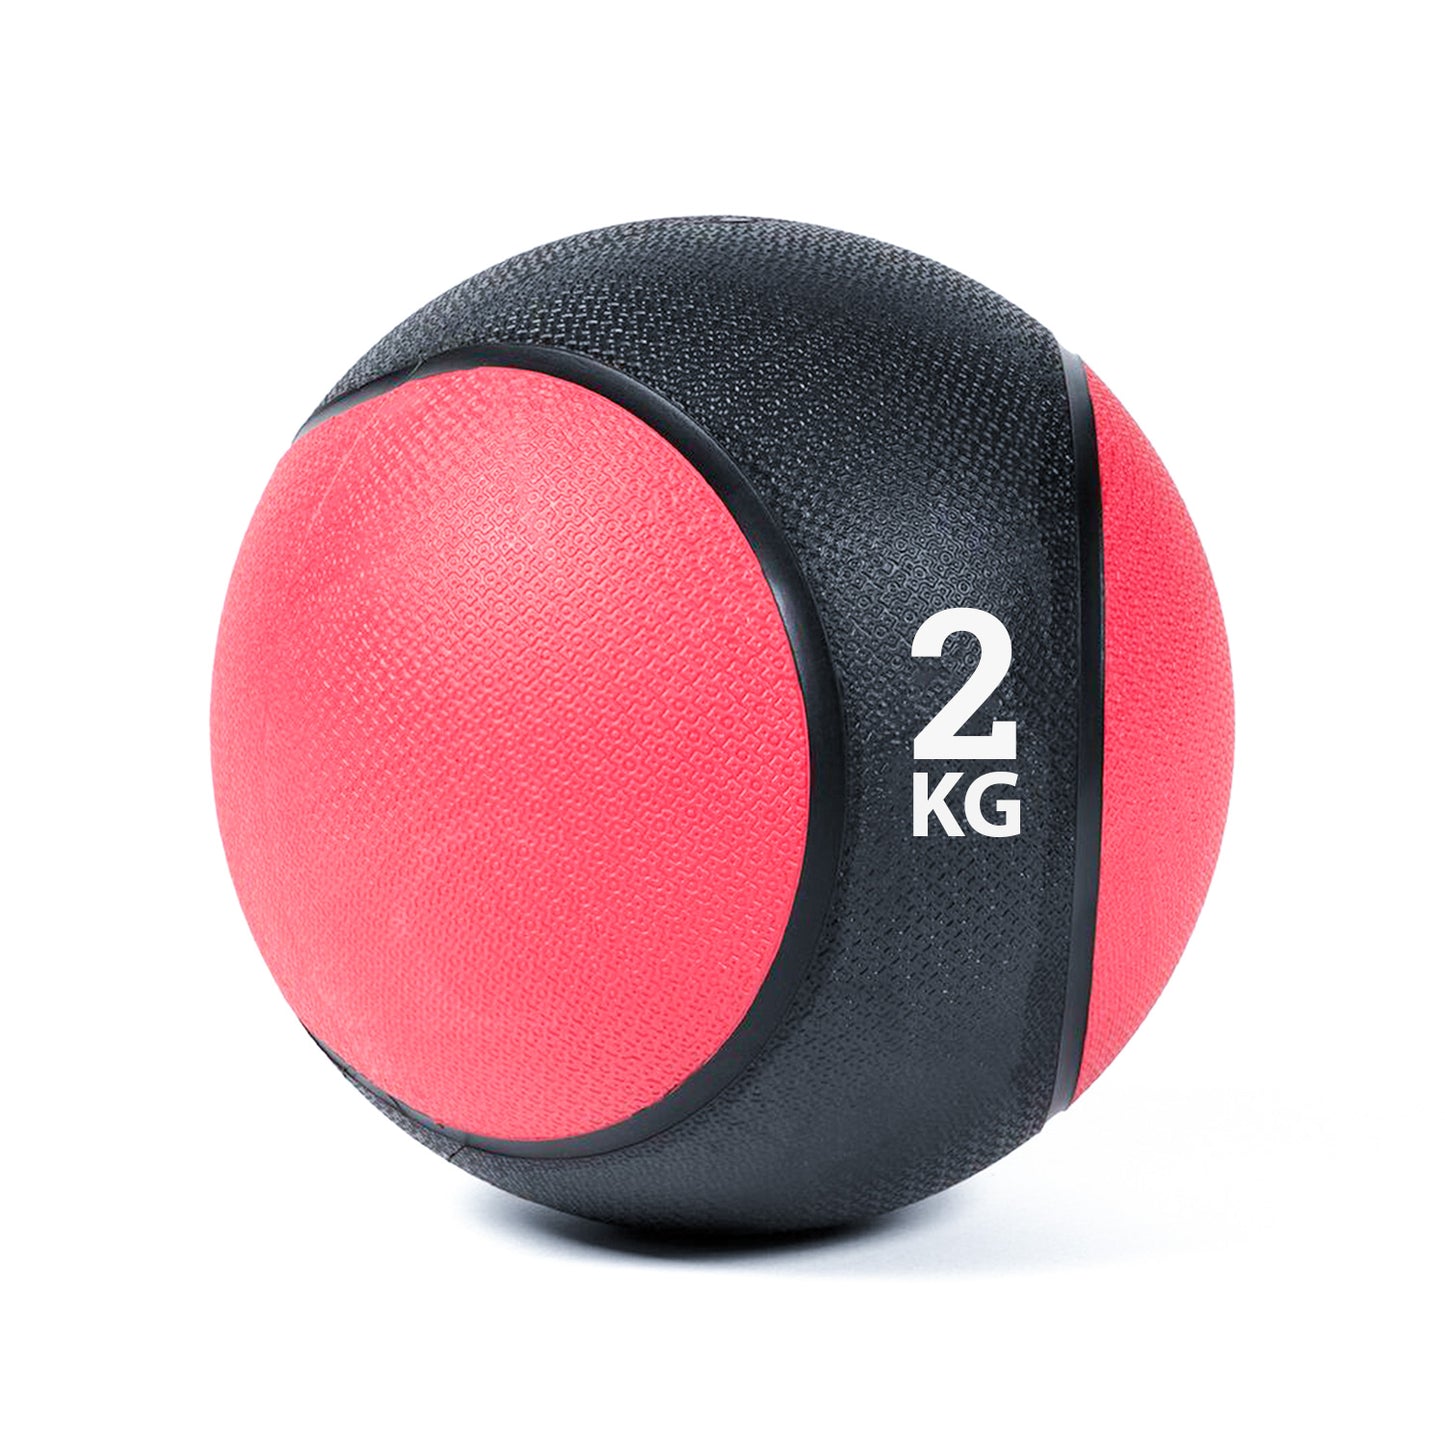 كرة طبية من المطاط لاعادة التأهيل و اللياقة البدنية - لون اسود و احمر - وزن 2 كيلو جرام